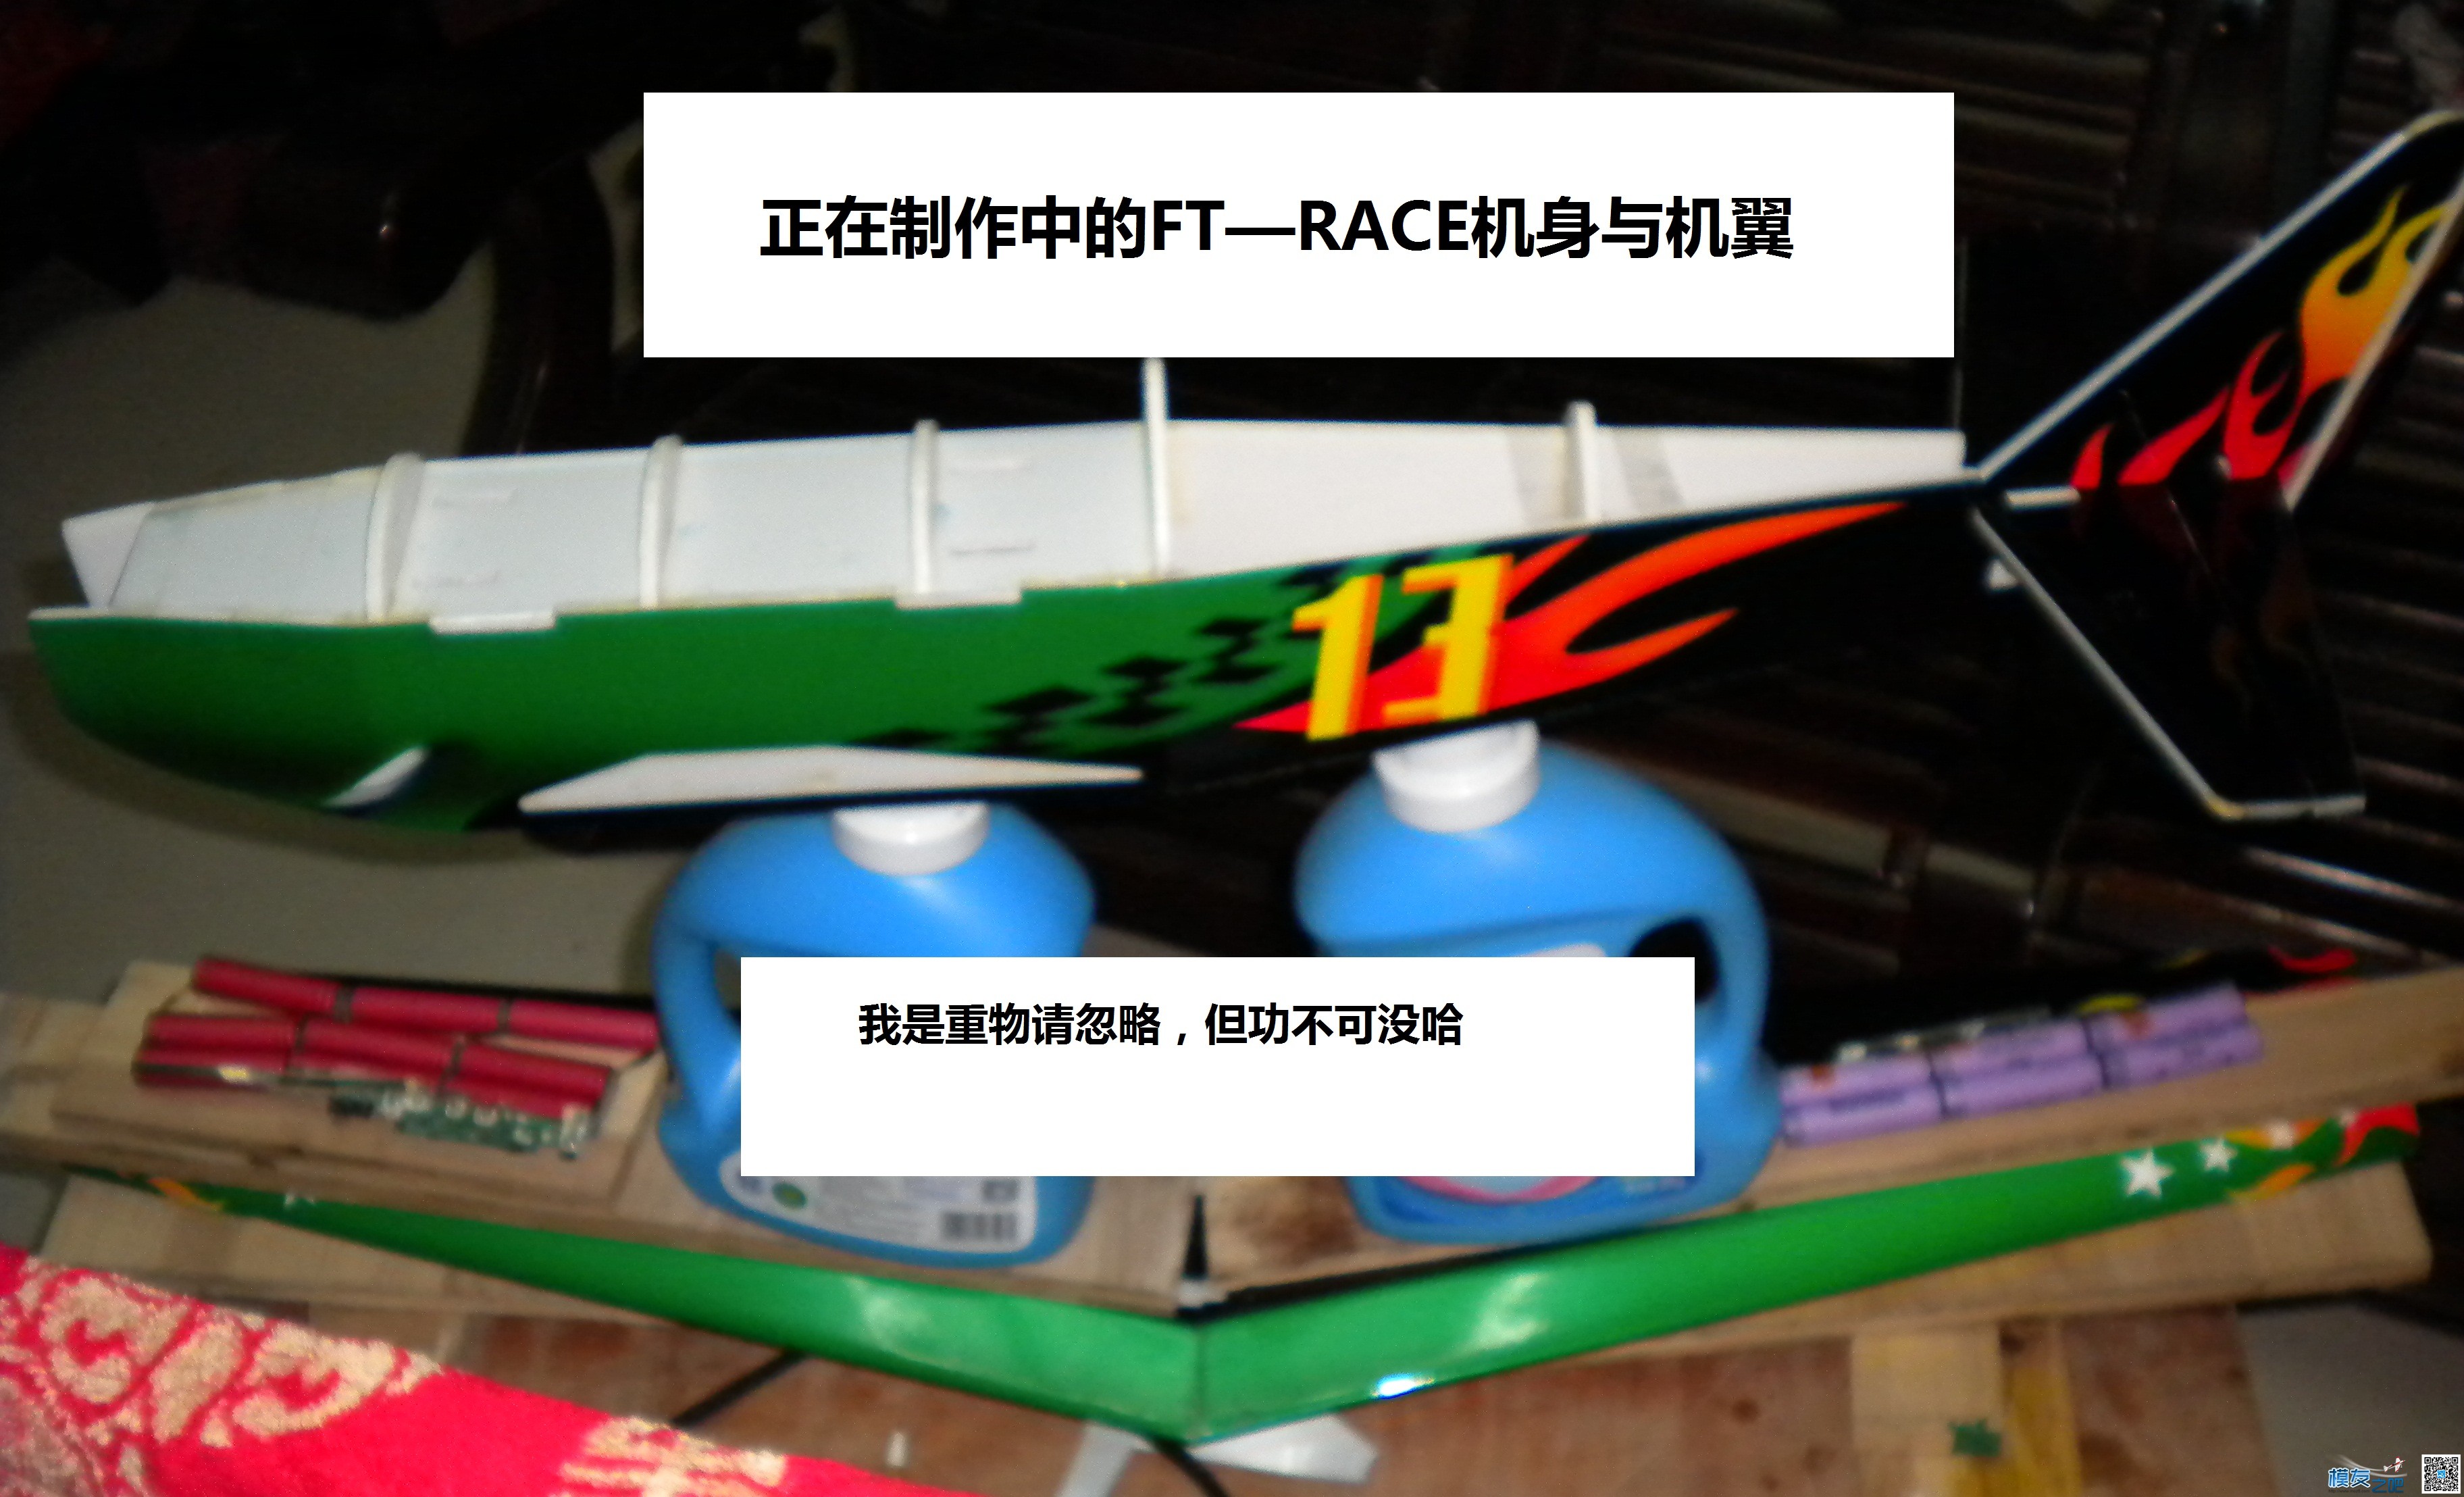 [我爱DIY]+背胶涂装FT-RACER机制作 电池,舵机,电调,电机,图纸 作者:Marshal 8719 